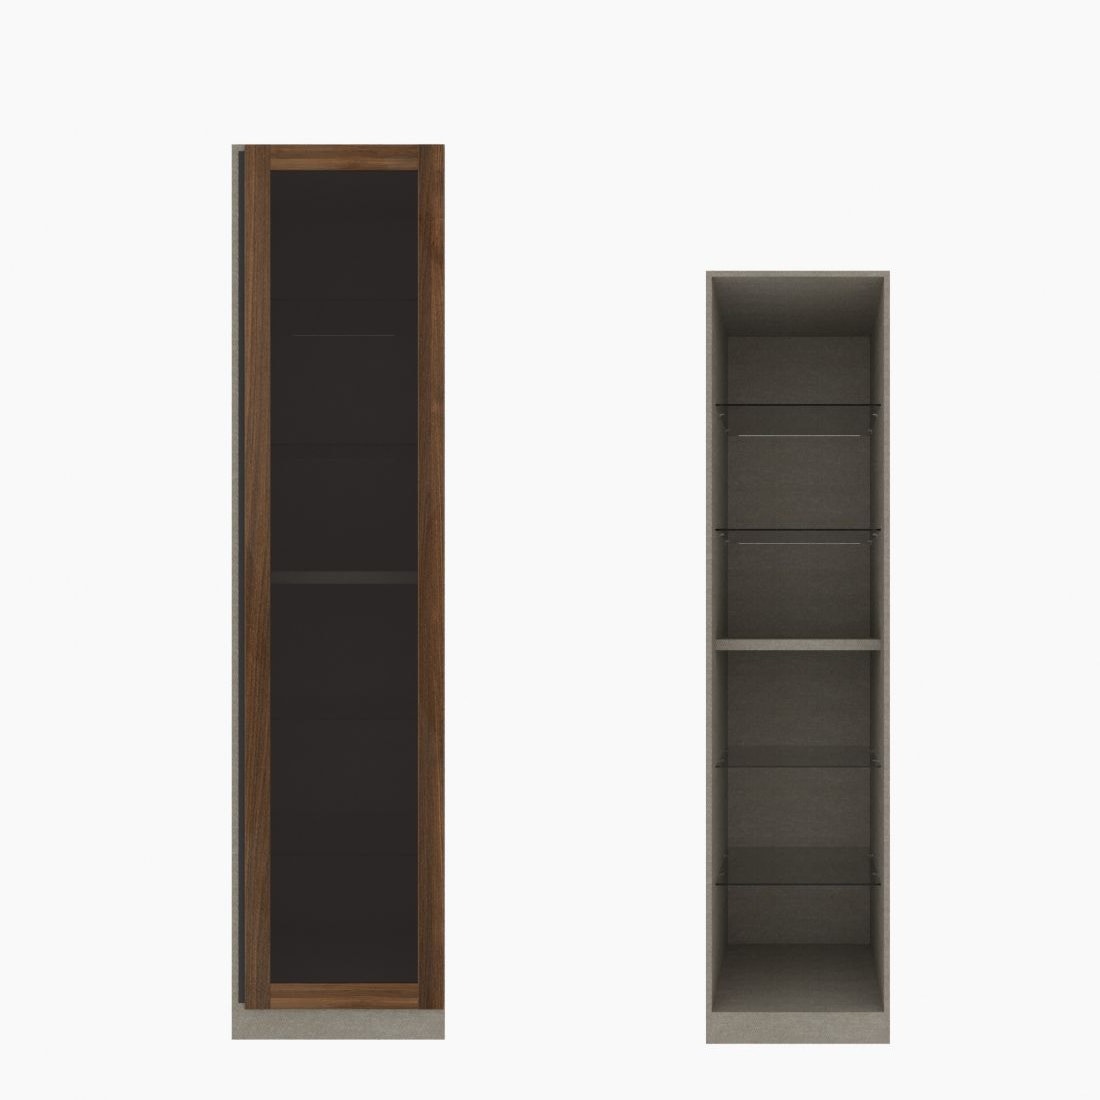 ตู้เสื้อผ้า ตู้โชว์ชั้นกระจก OP-H (หน้าบานเปิดขวา) ขนาด 50 ซม. รุ่น Blox สีไม้เข้ม&กระจกชาดำ01